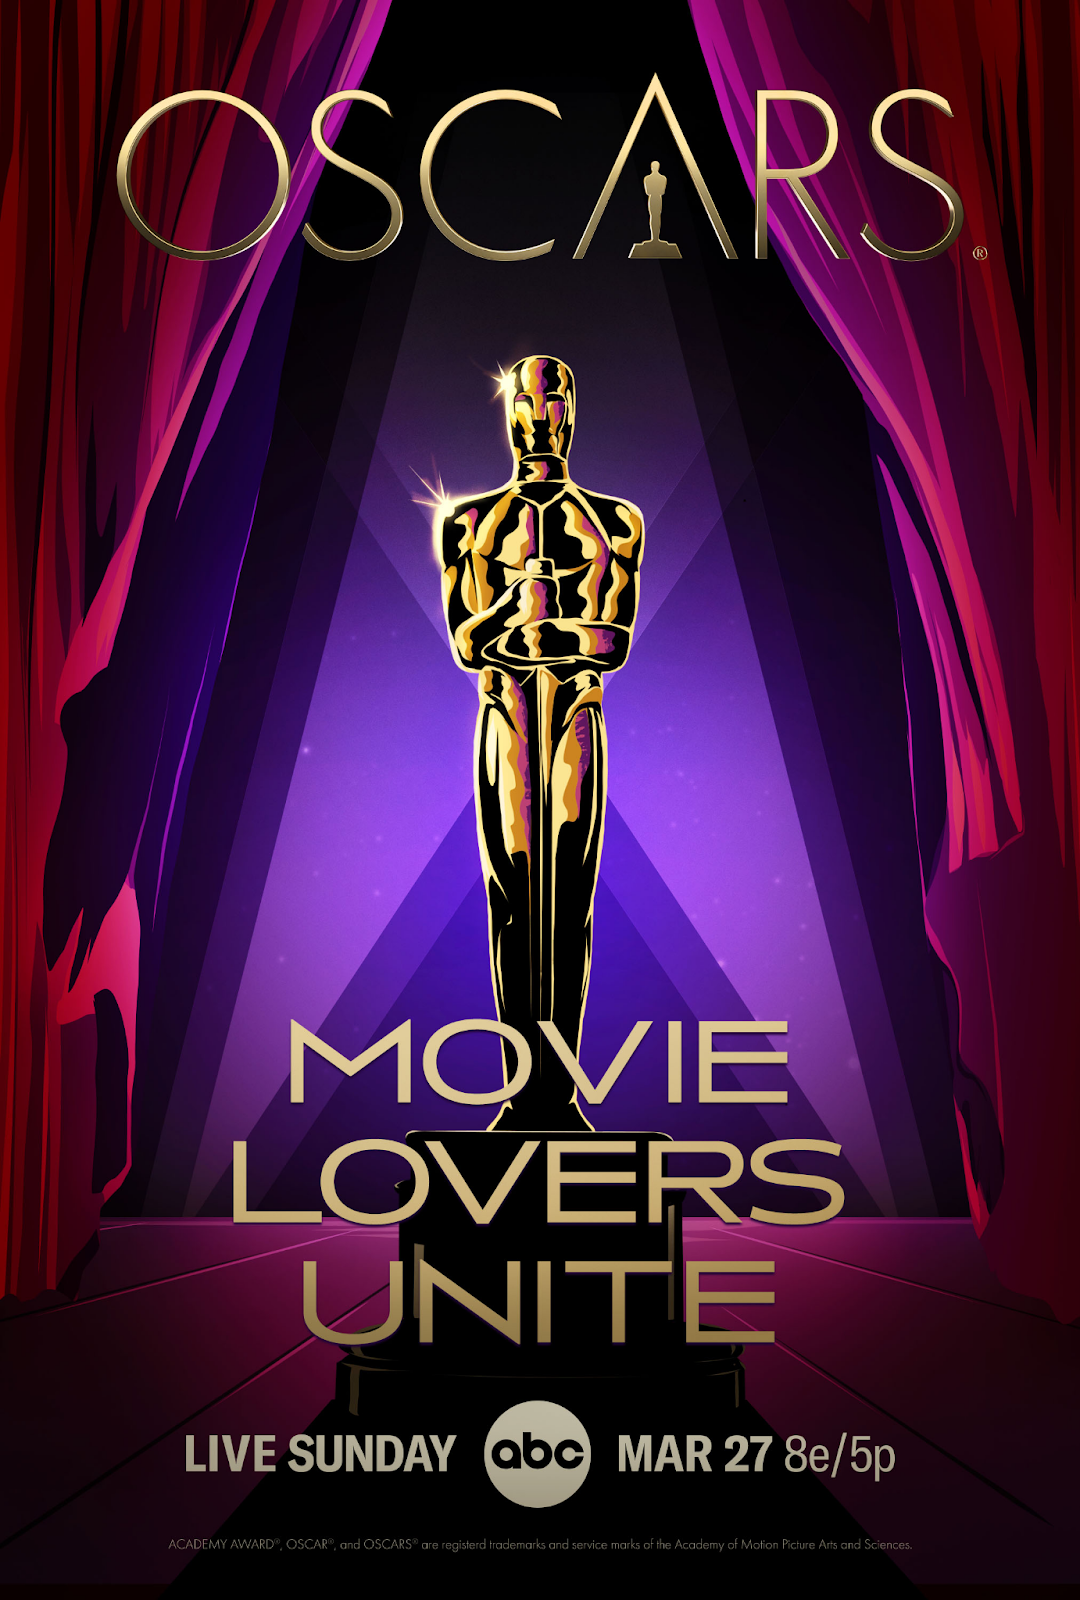 Material gráfico de divulgação da transmissão do Oscar 2022, com logo , estatueta e a frase "movie lovers unite".